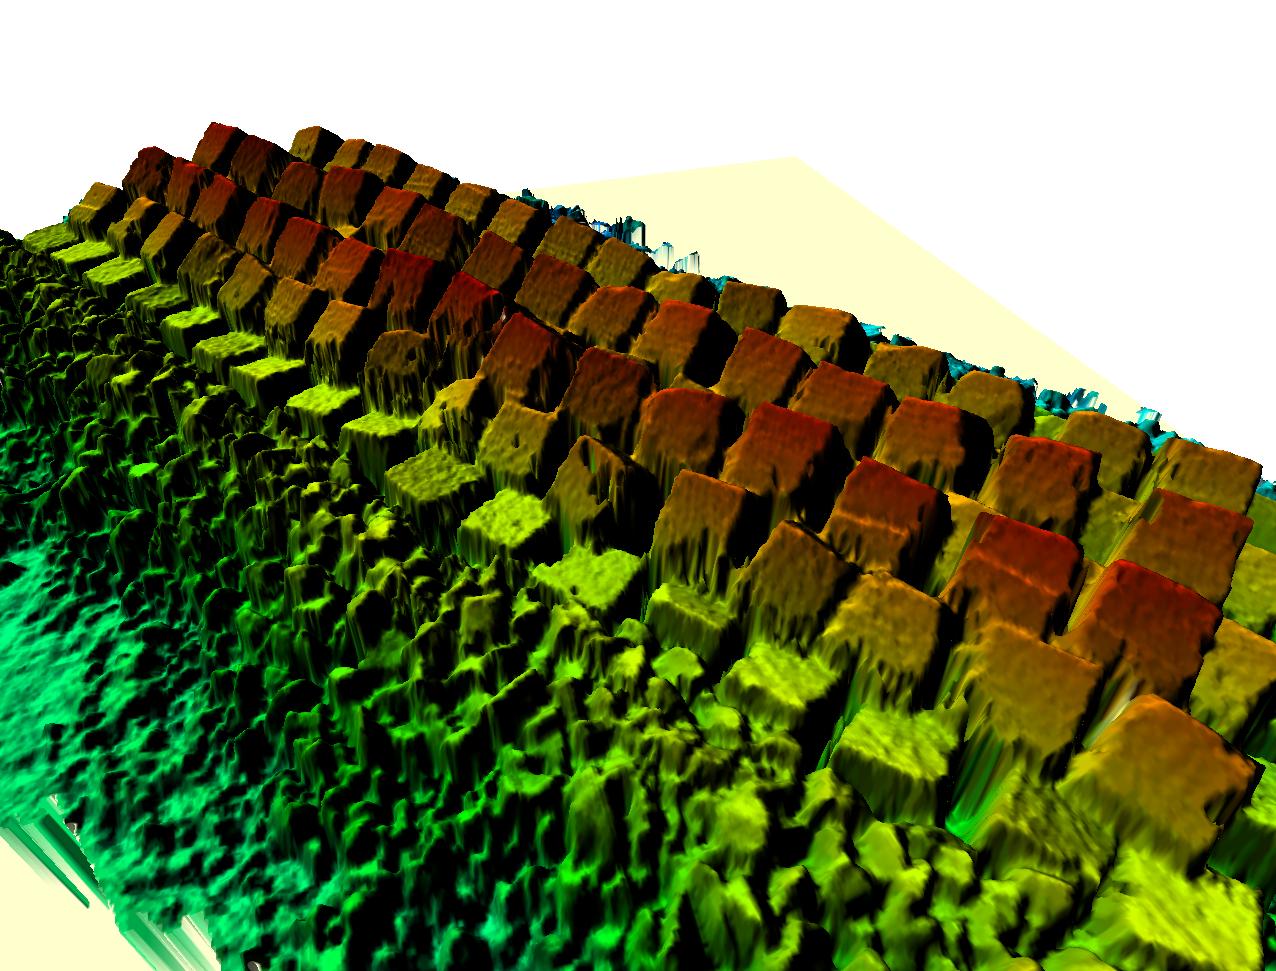 3D beeld gemaakt door laser en multibeam echolood metingen van de Harde Zeewering van Maasvlakte 2.